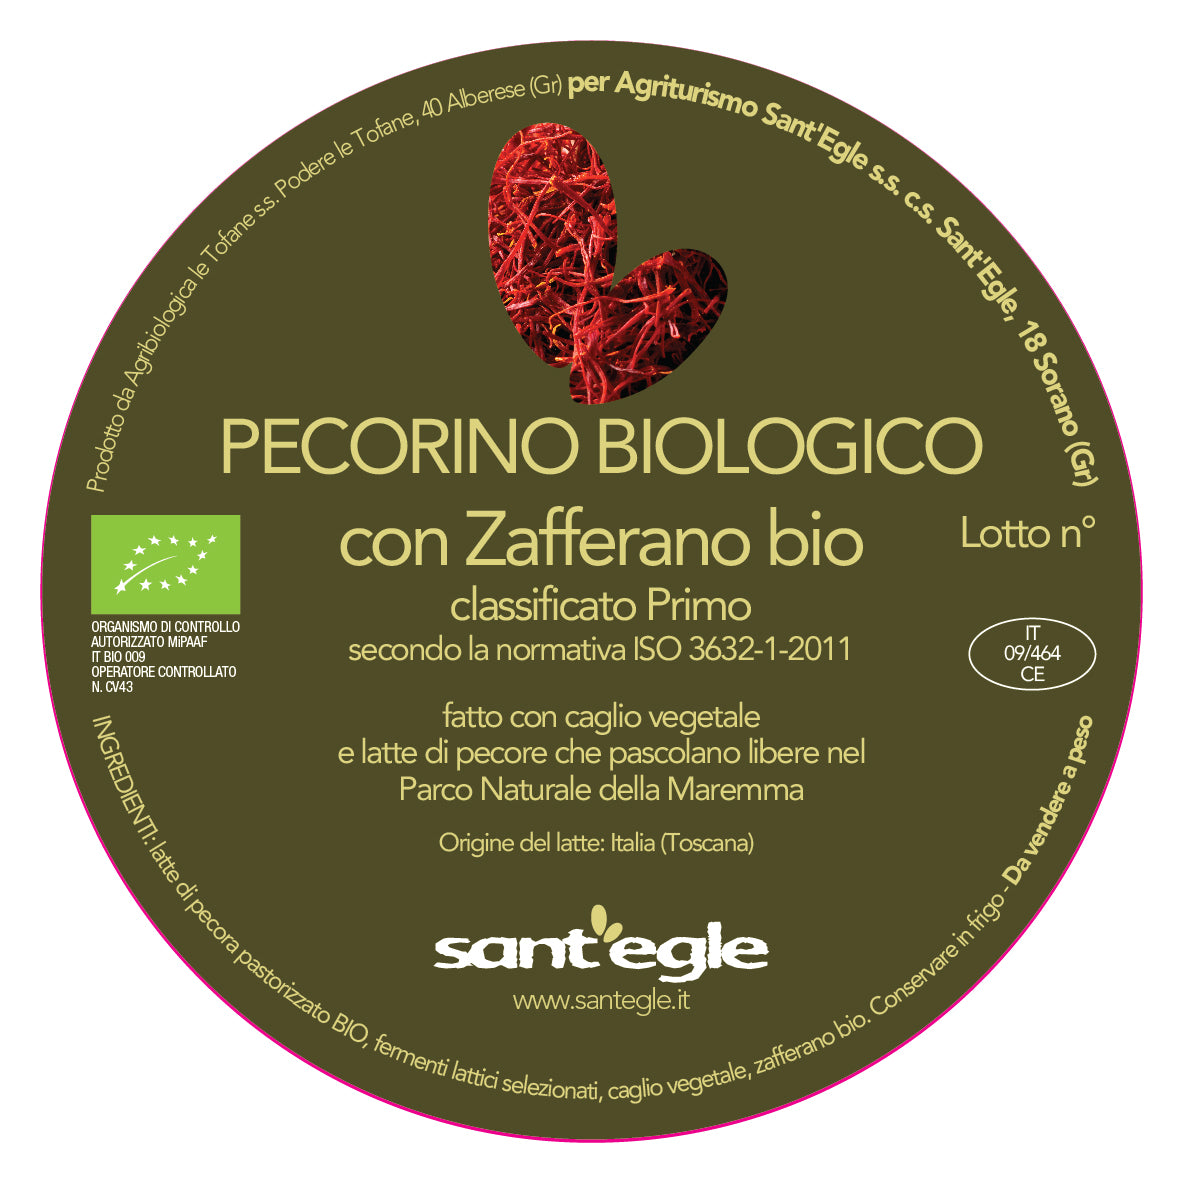 Pecorino Biologico allo Zafferano bio con composte in agrodolce biologiche